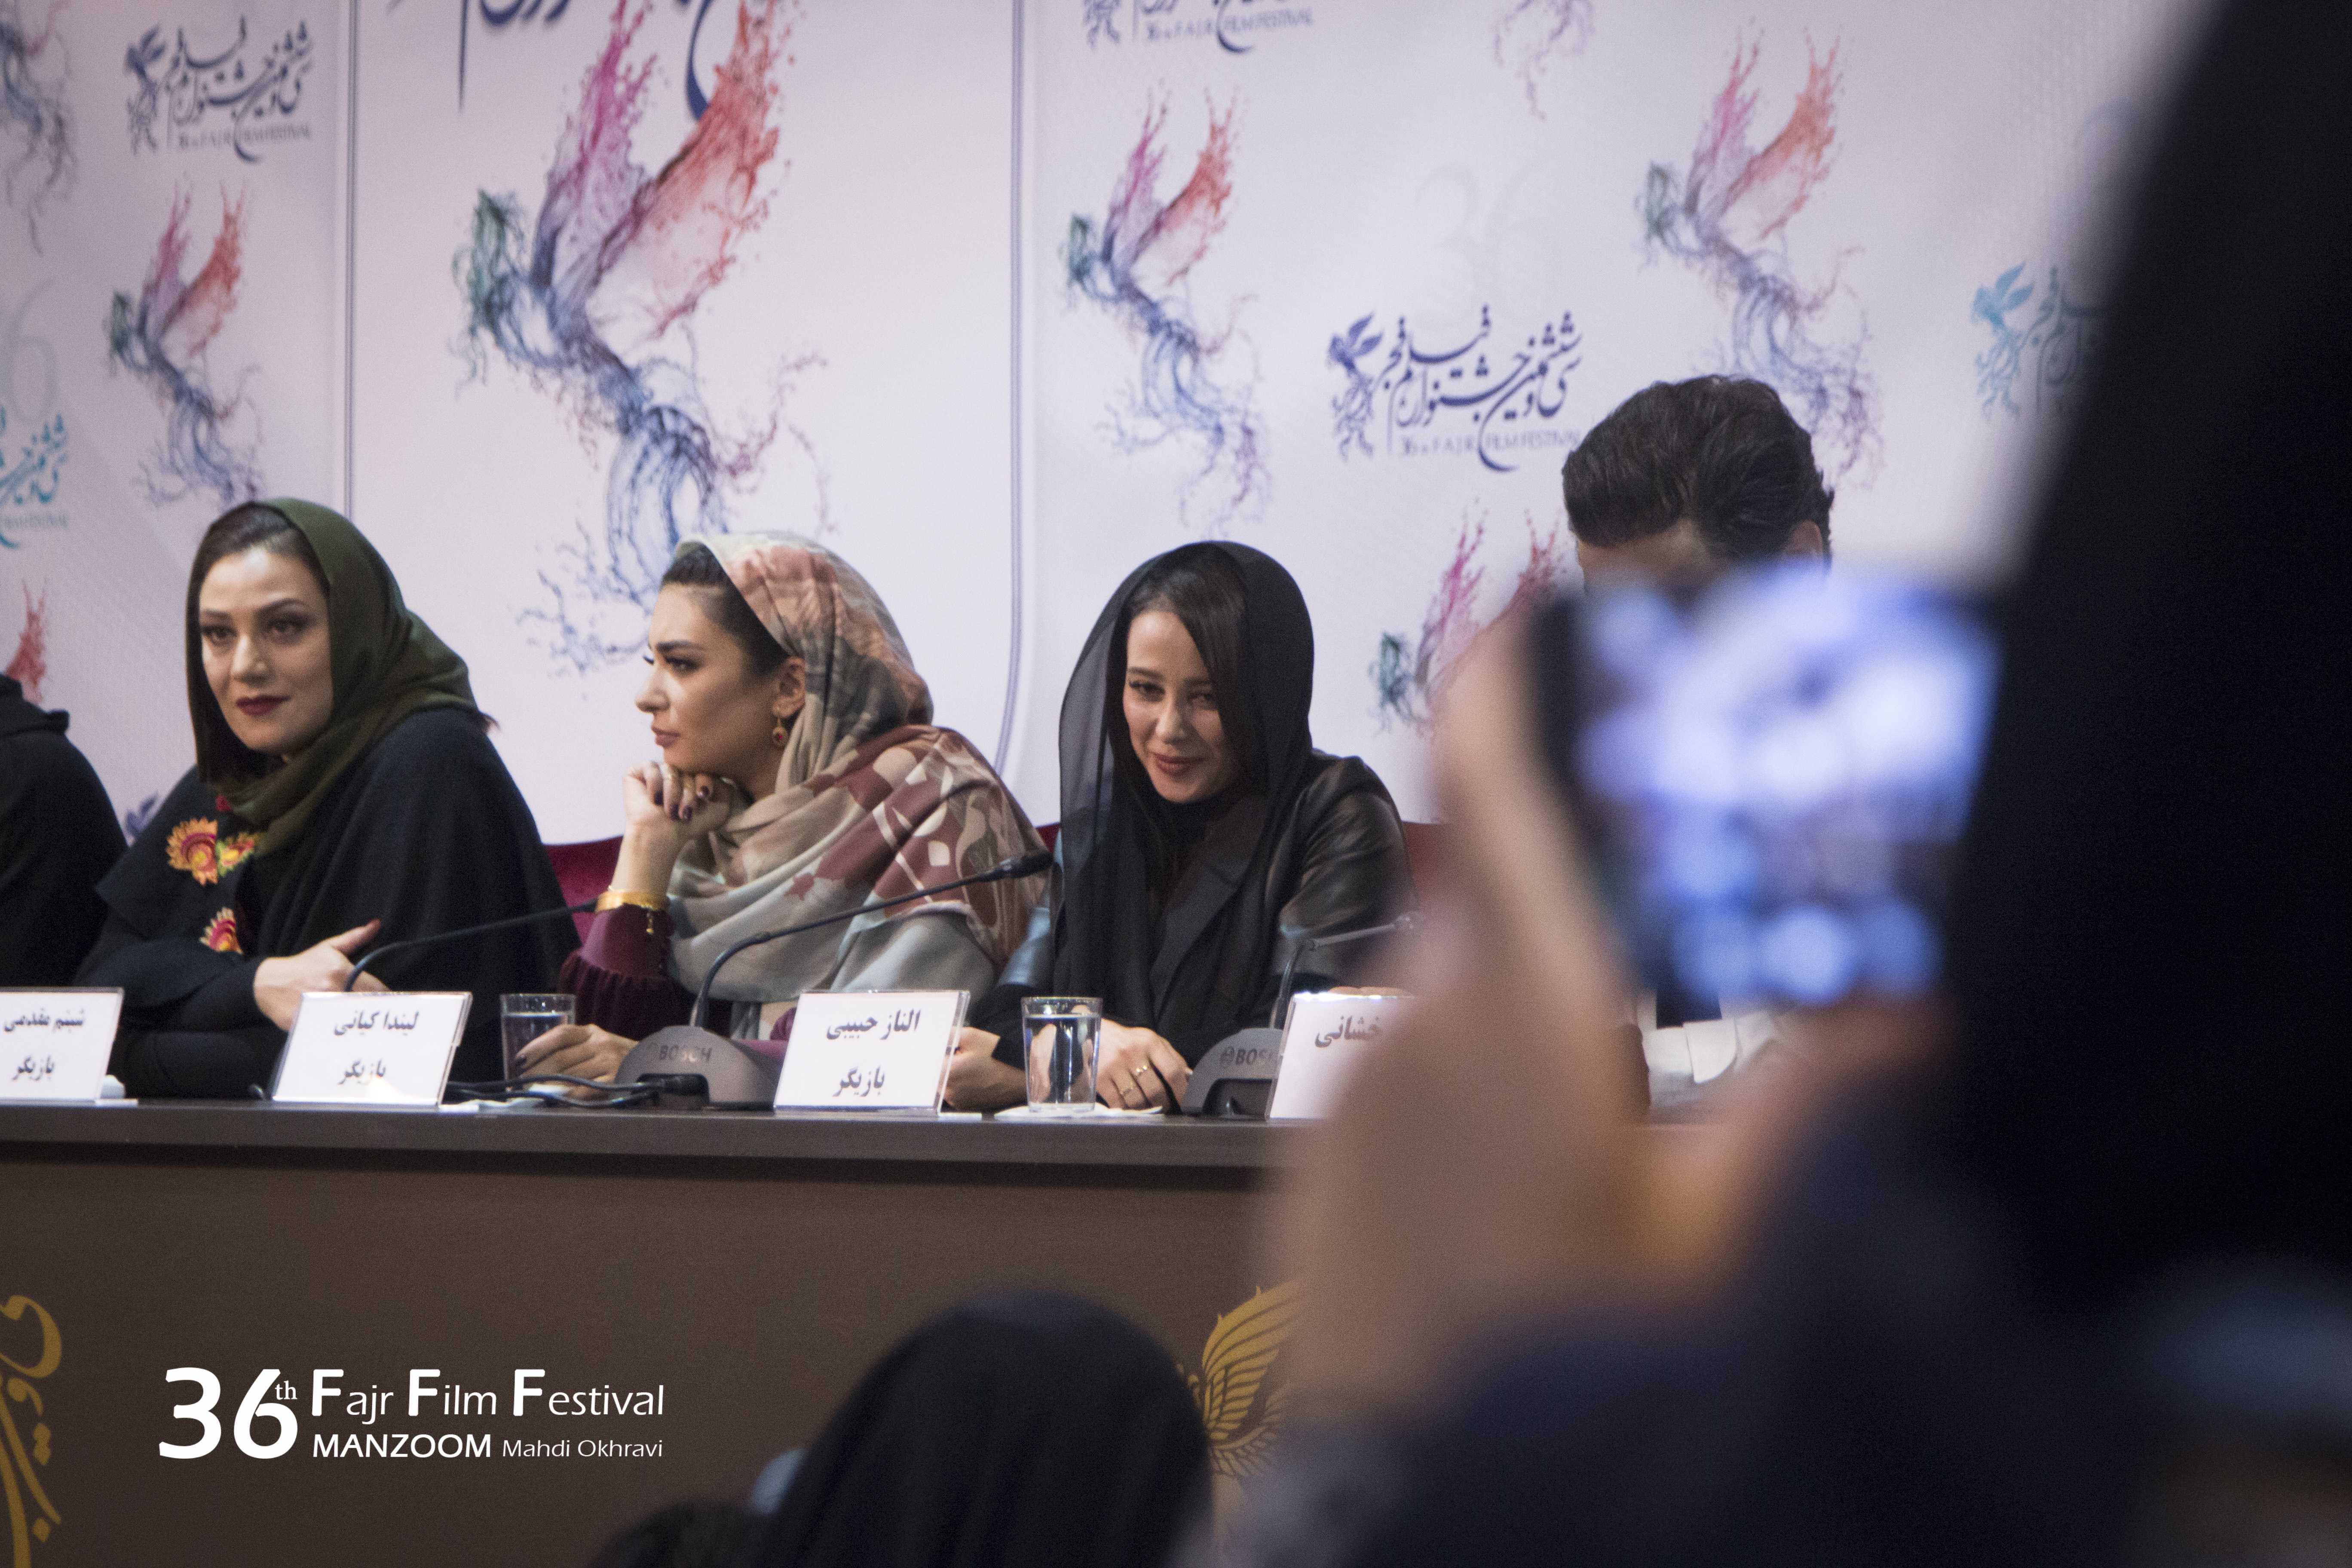 الناز حبیبی در نشست خبری فیلم سینمایی خجالت نکش به همراه شبنم مقدمی و لیندا کیانی